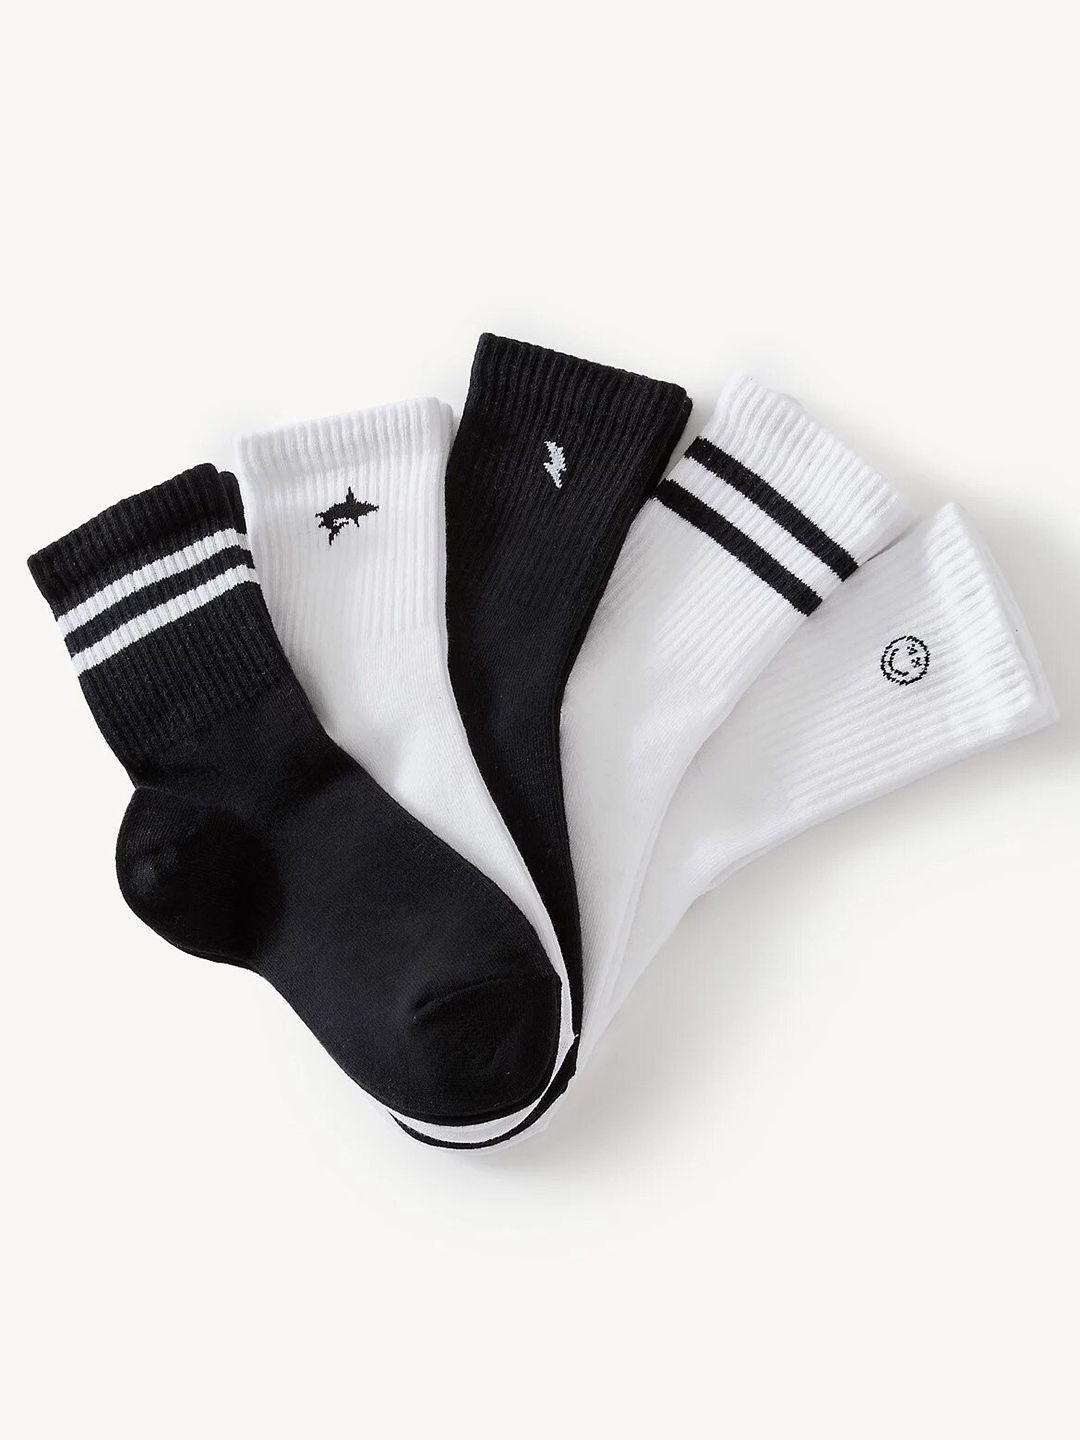 marks & spencer boys pack of 5 patterned calf-length socks